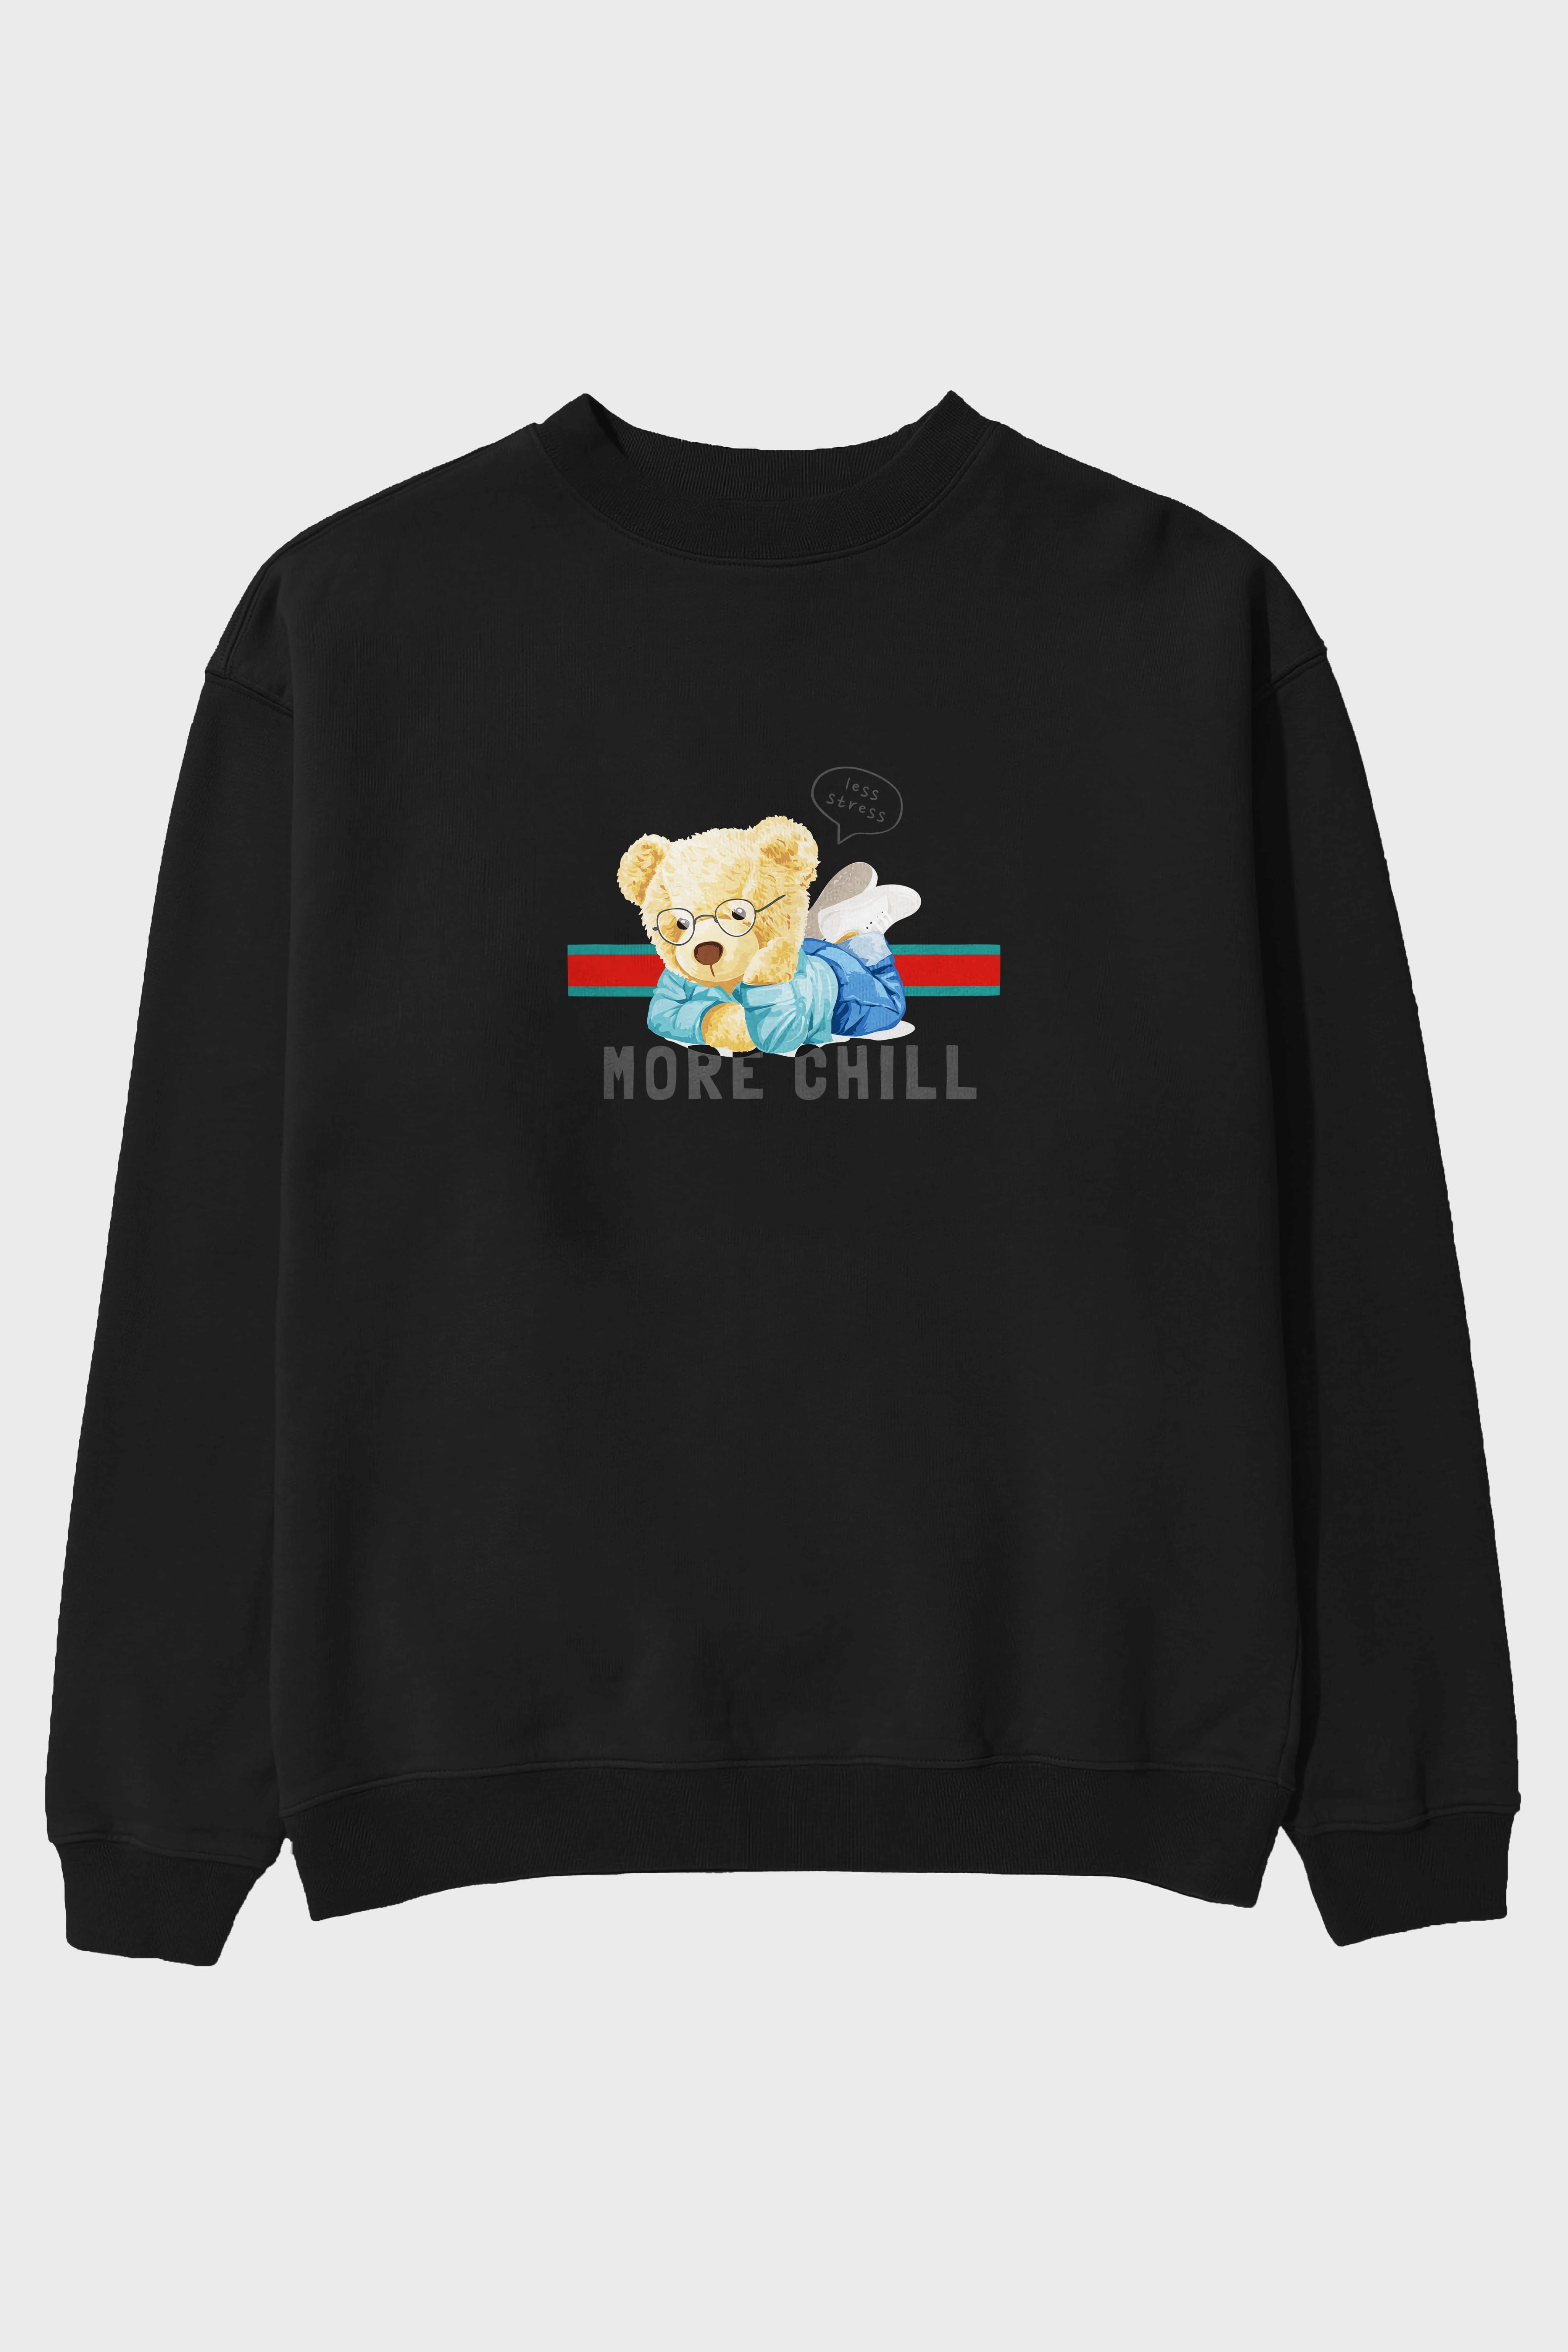 Teddy Bear More Chill Ön Baskılı Oversize Sweatshirt Erkek Kadın Unisex